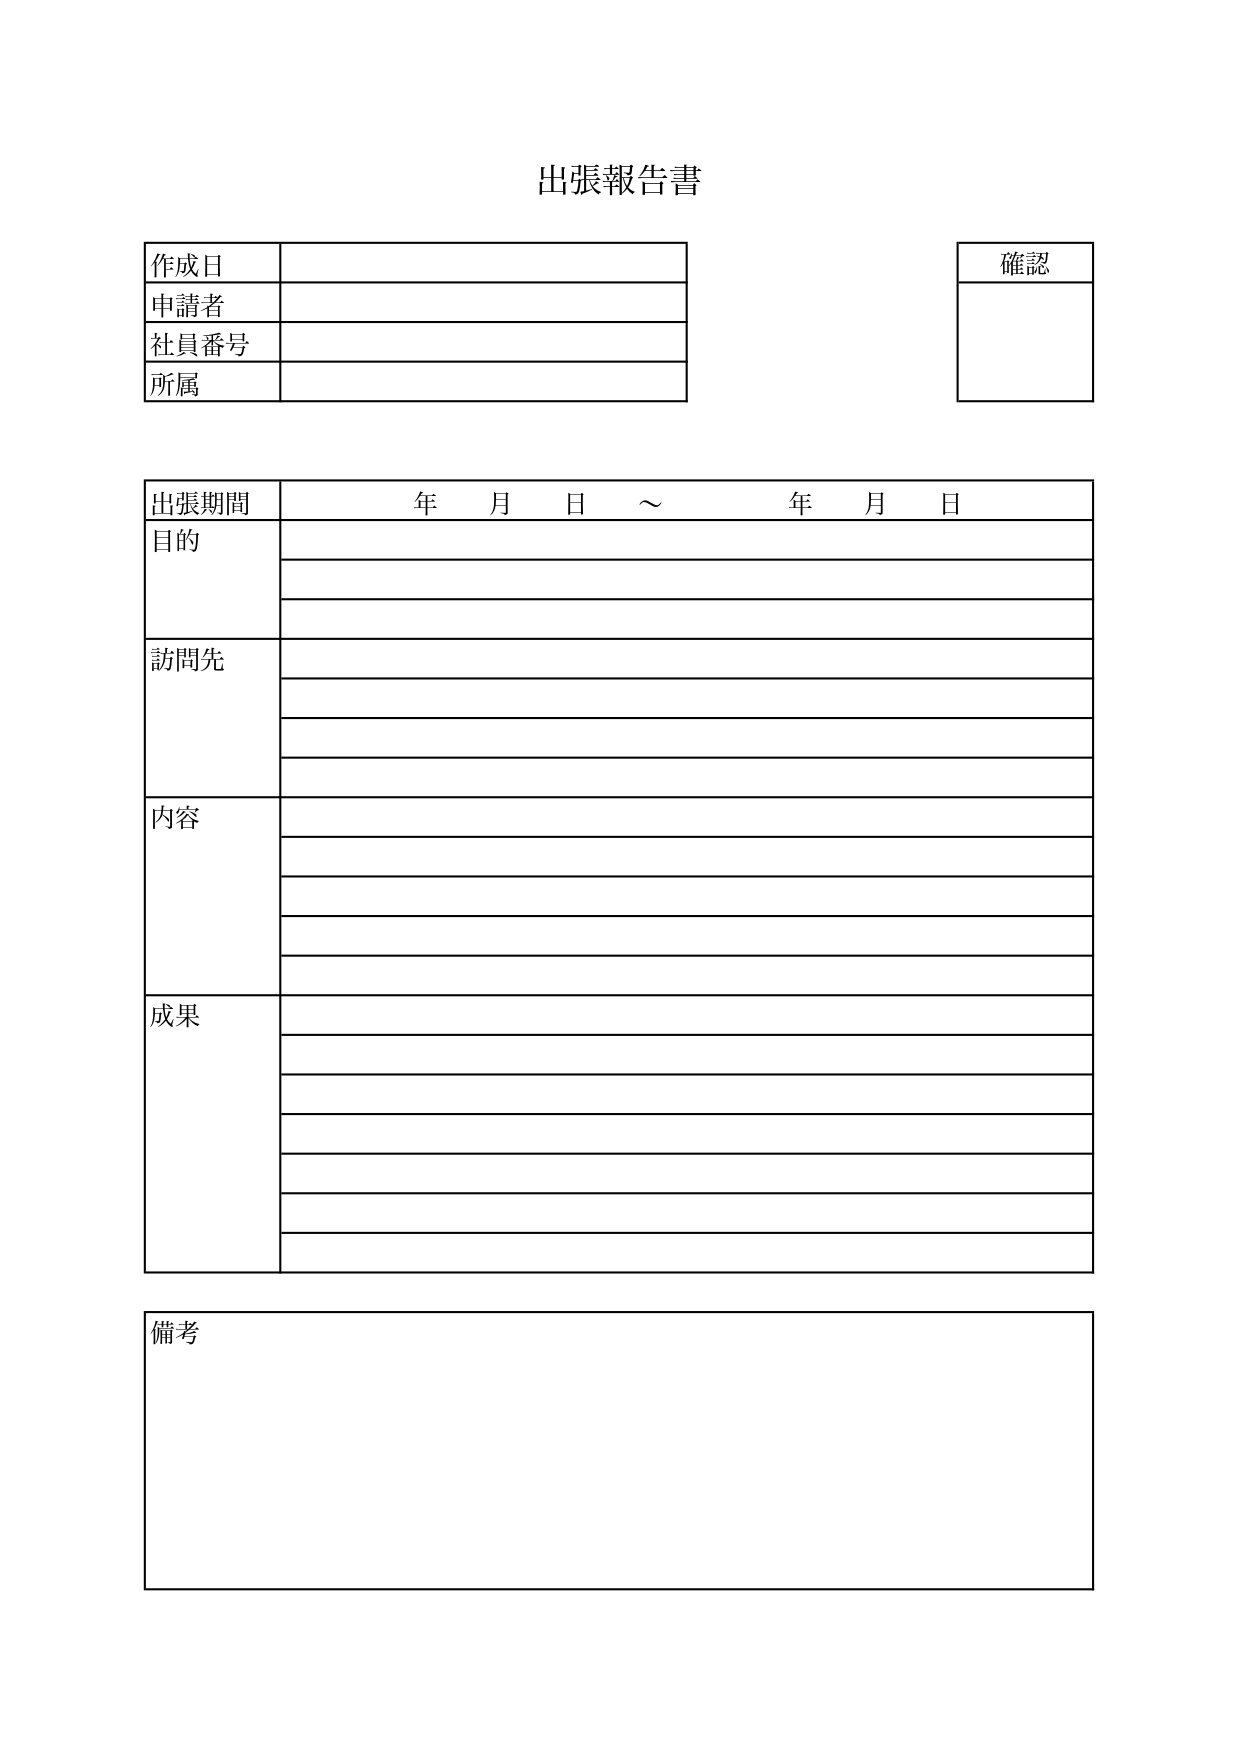 出張報告書「Excel・Word・PDF」見学や研修に使える枠ありで見やすく書き方が簡単な無料テンプレート